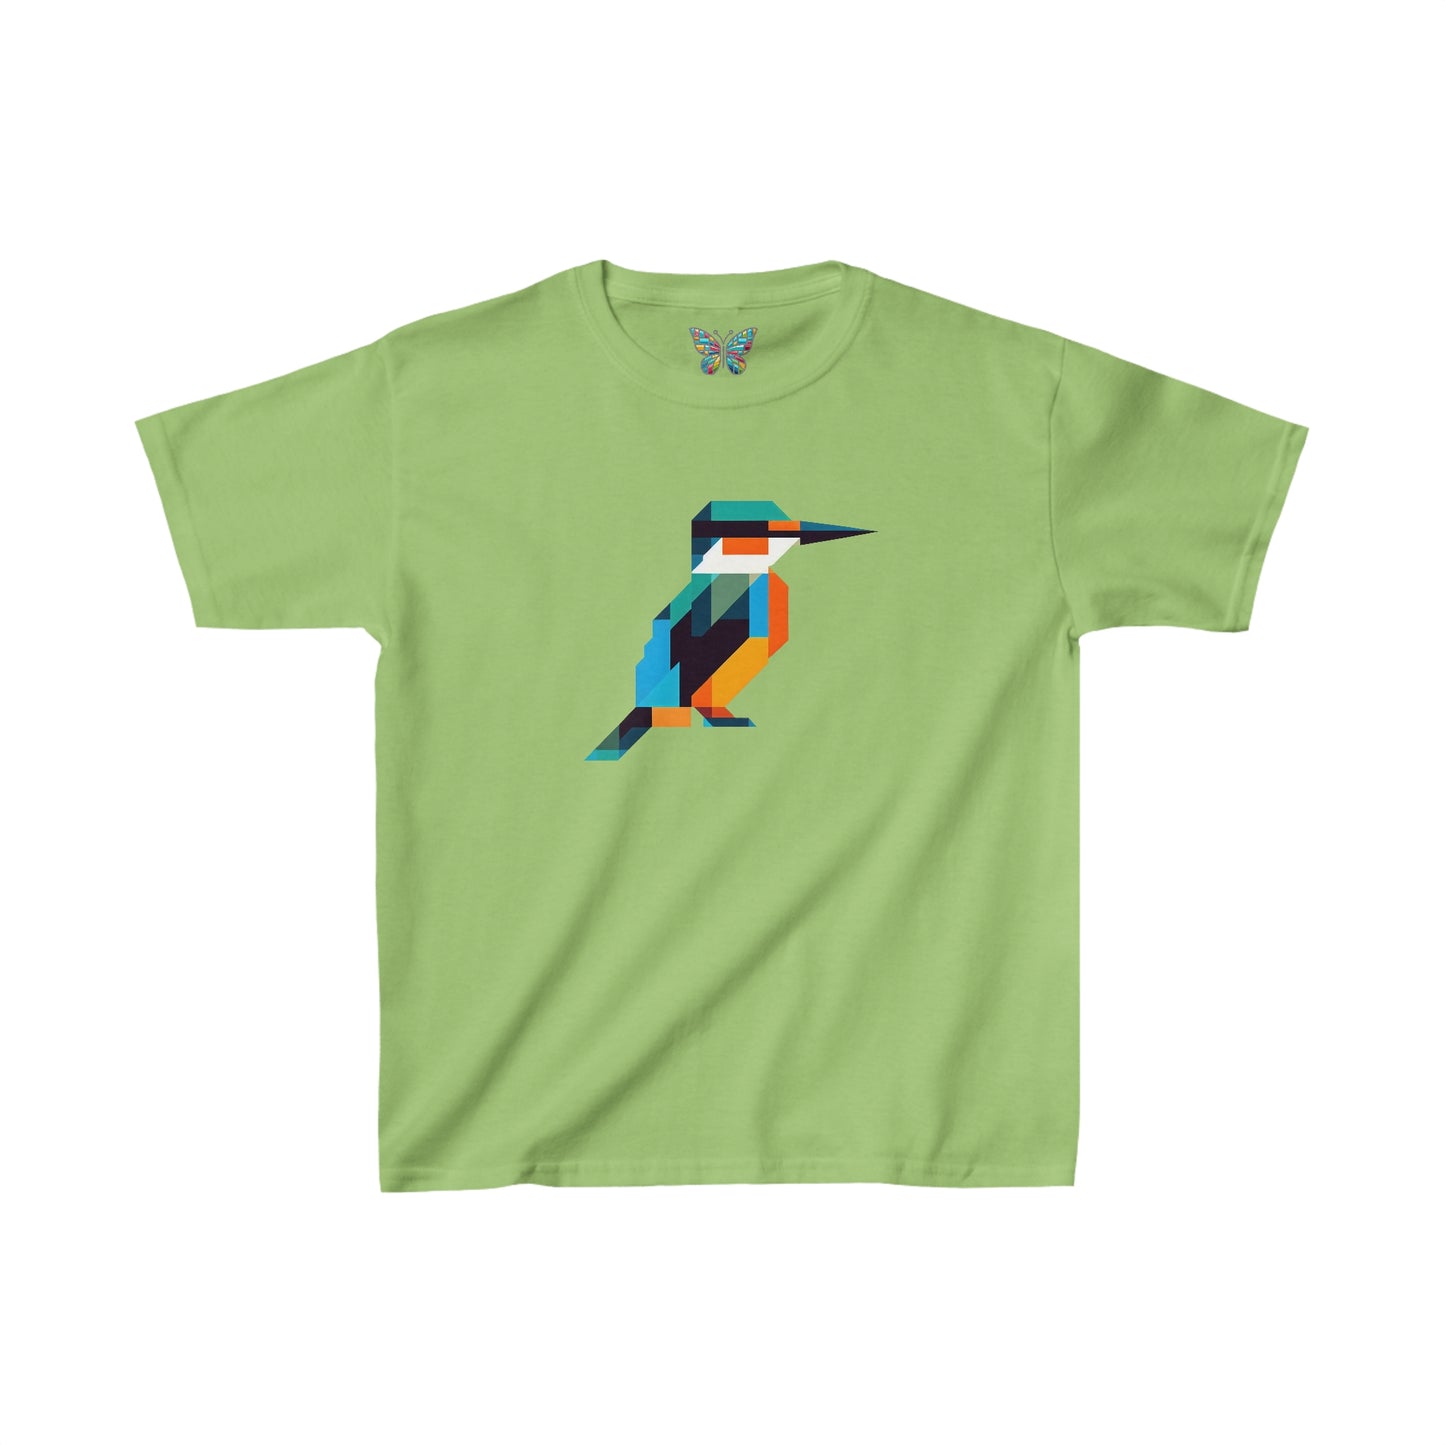 Kingfisher Euphorealis - Youth - Snazzle Tee